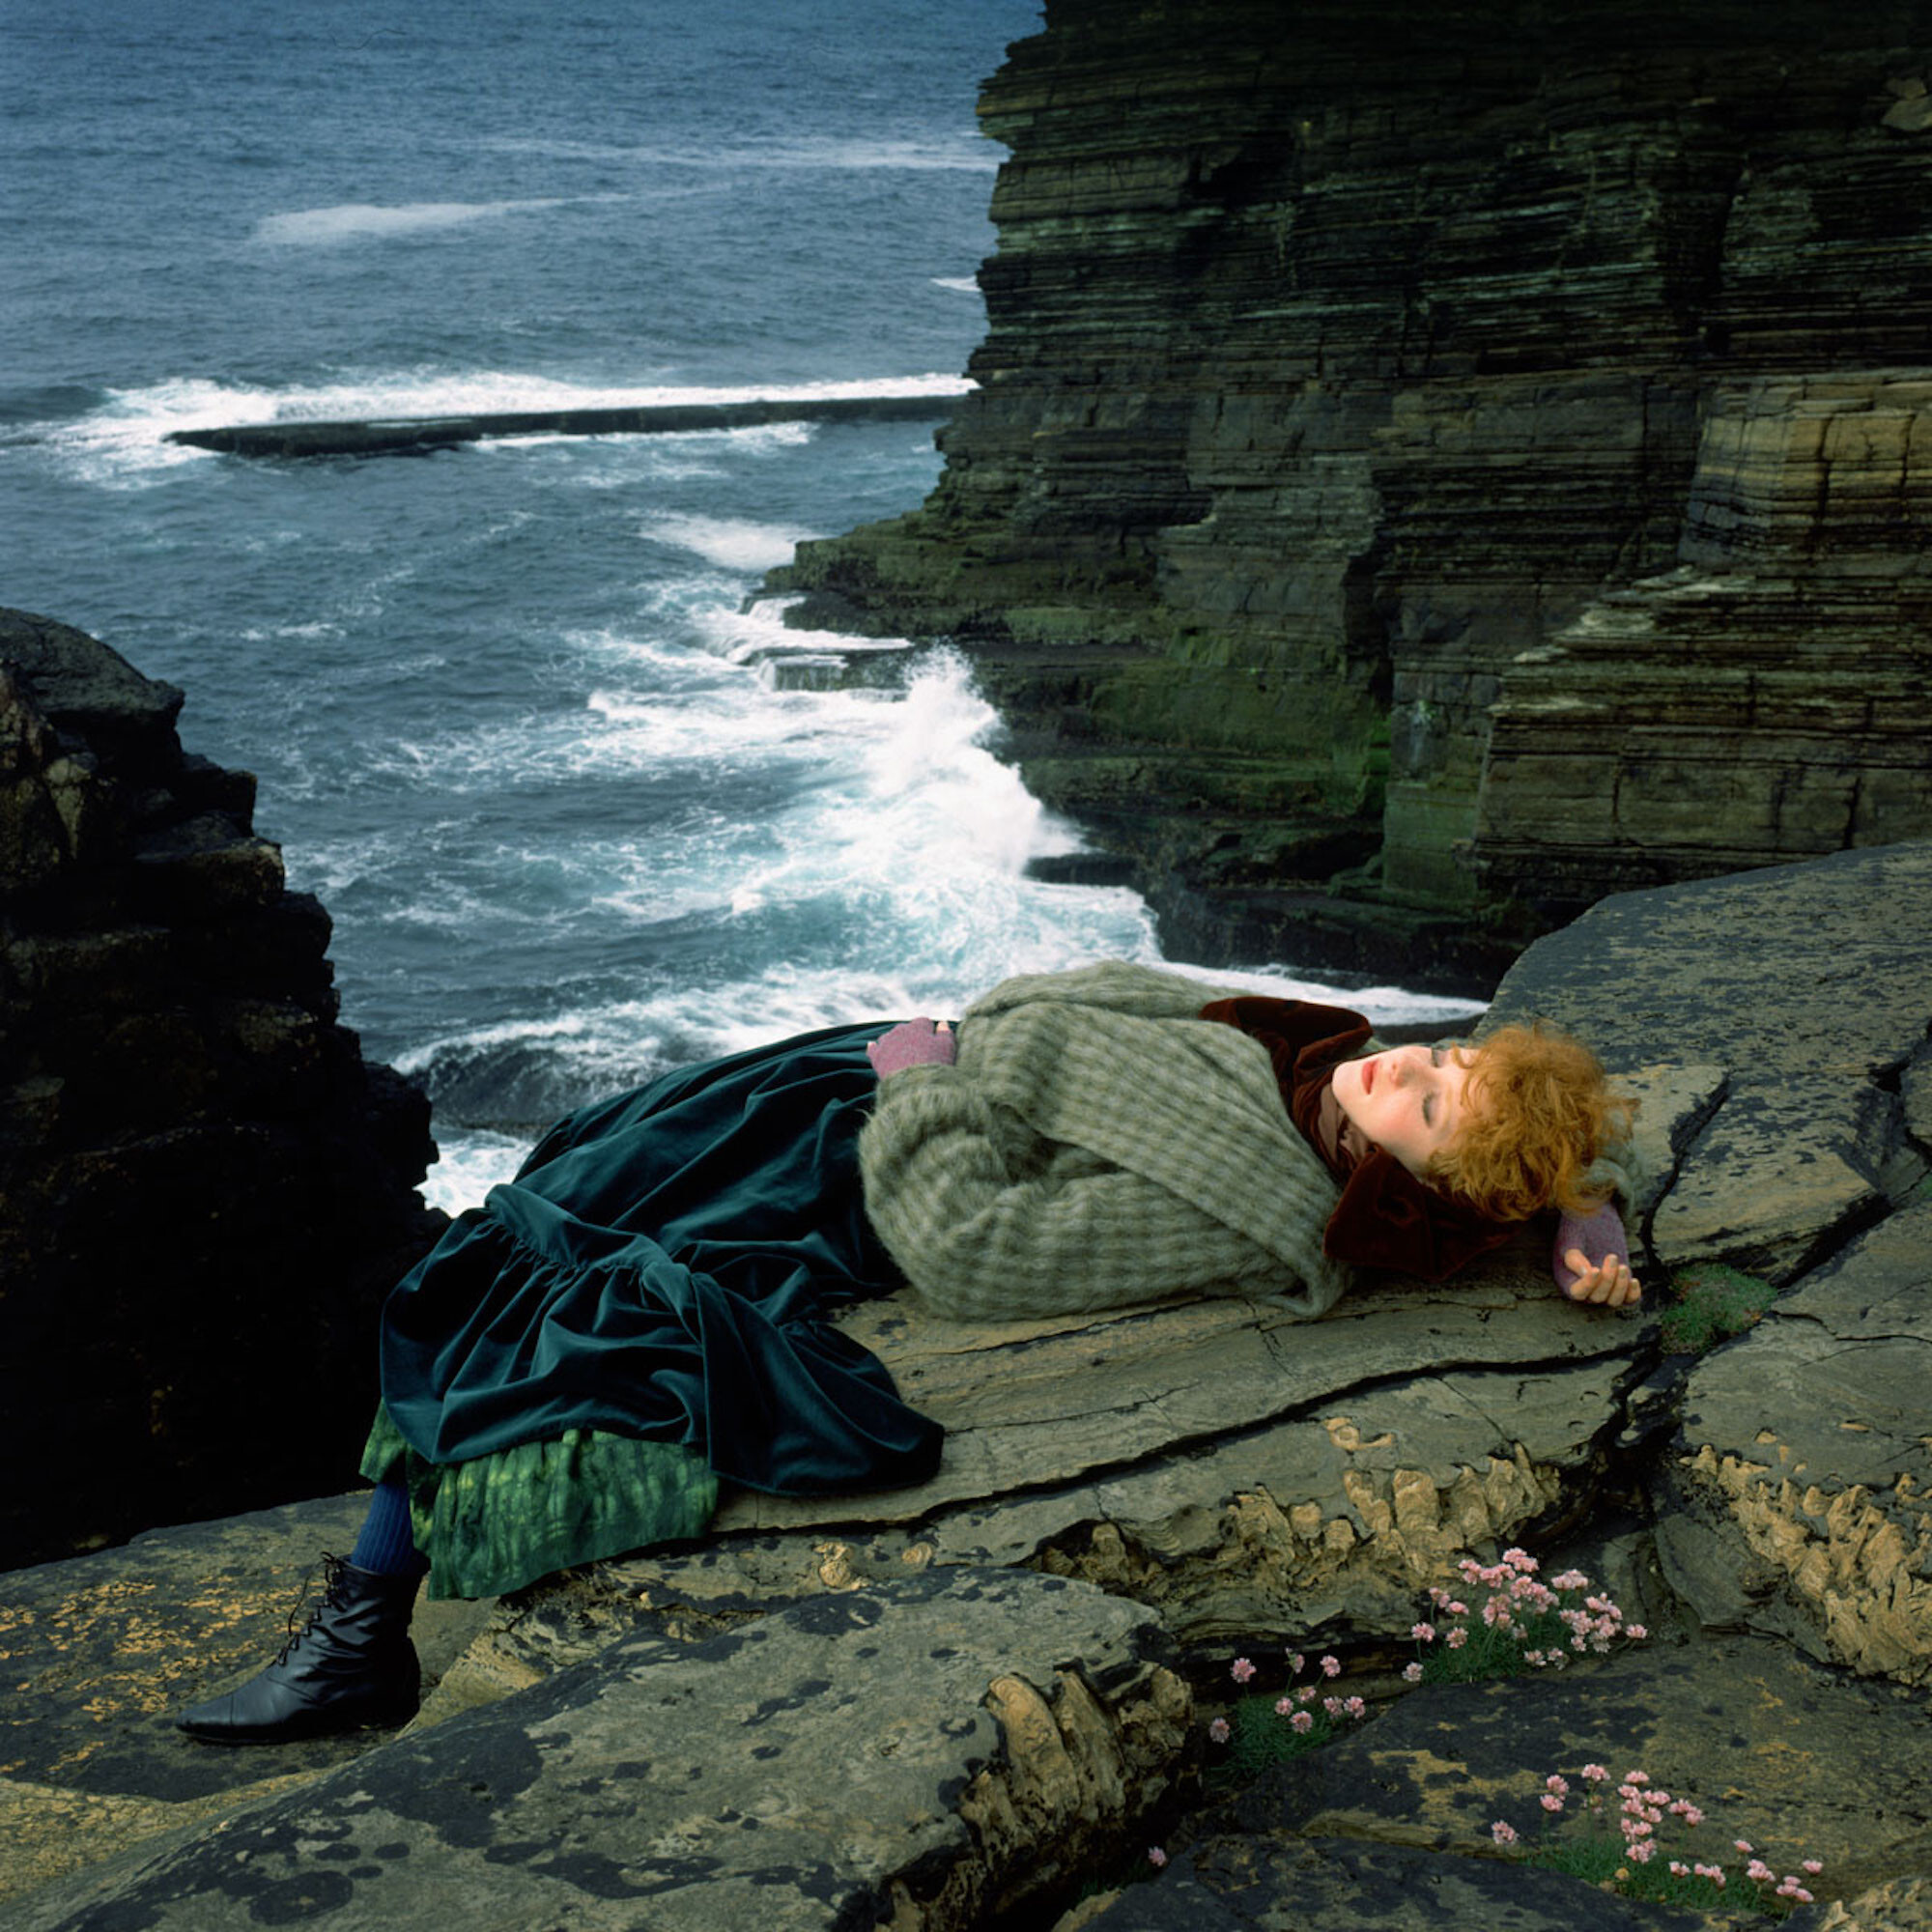 Оркнейские острова, Шотландия, 1984 год. Фотограф Альберт Уотсон